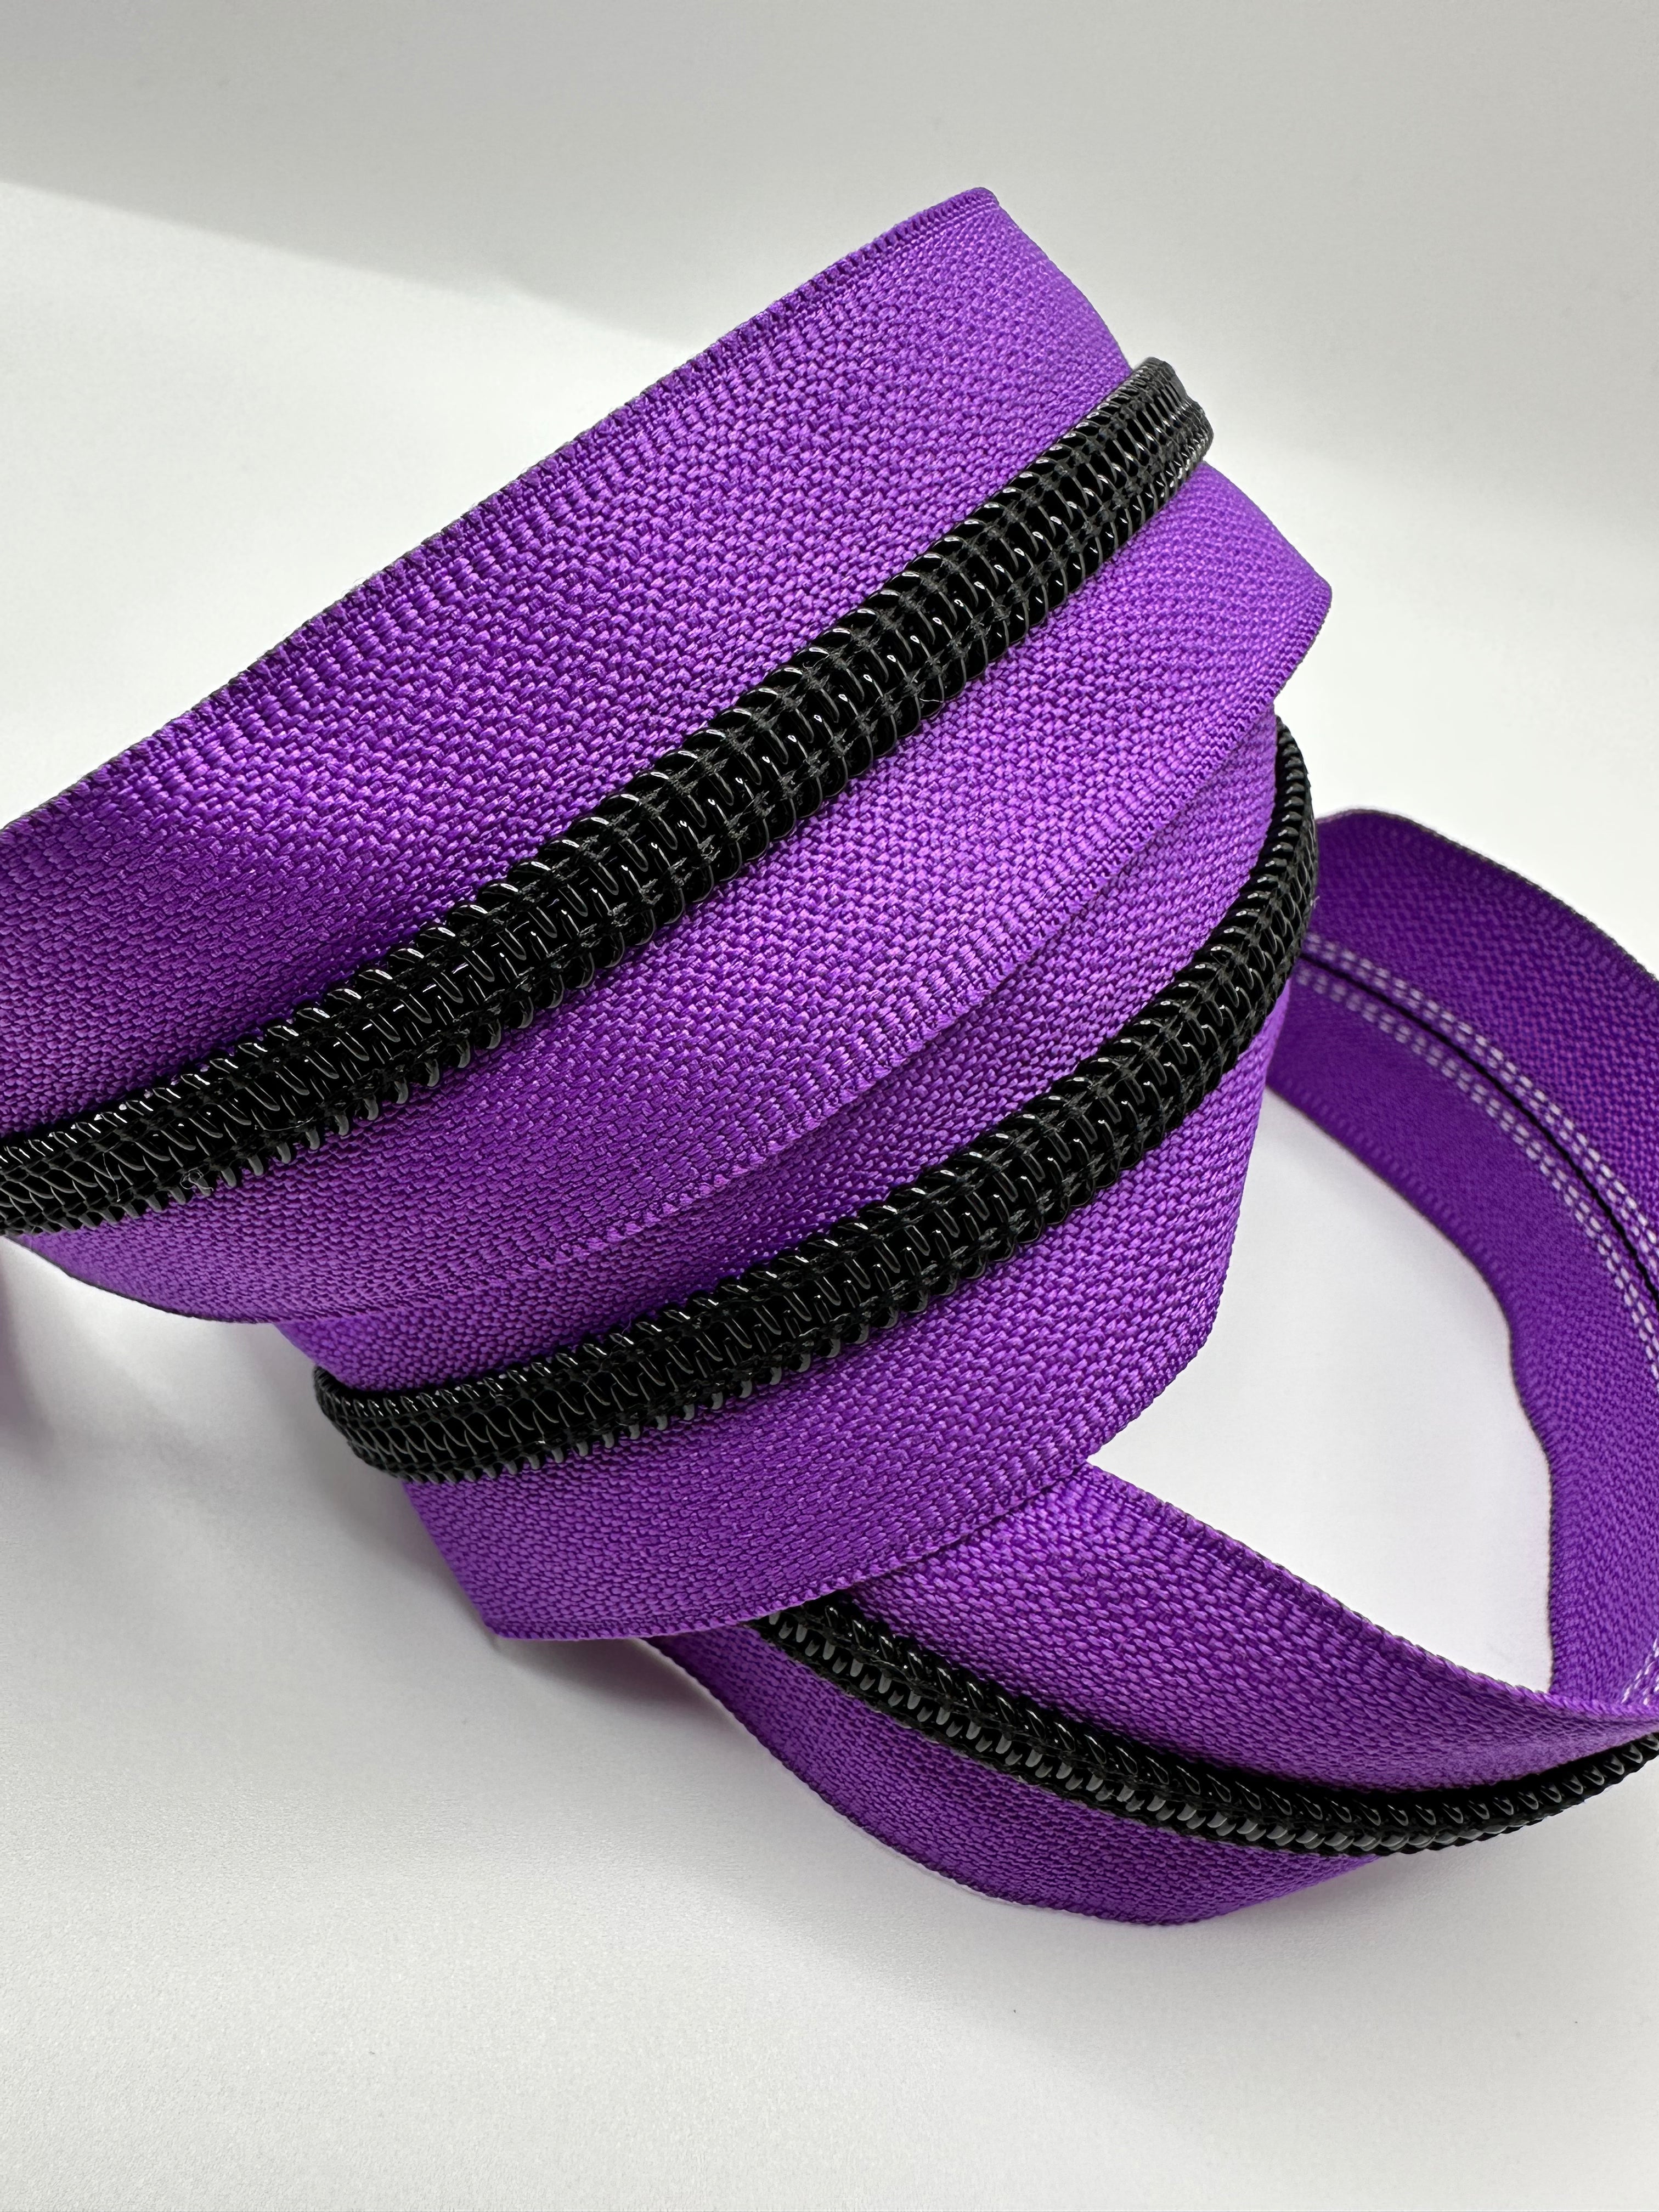 Black teeth on purple zipper tape